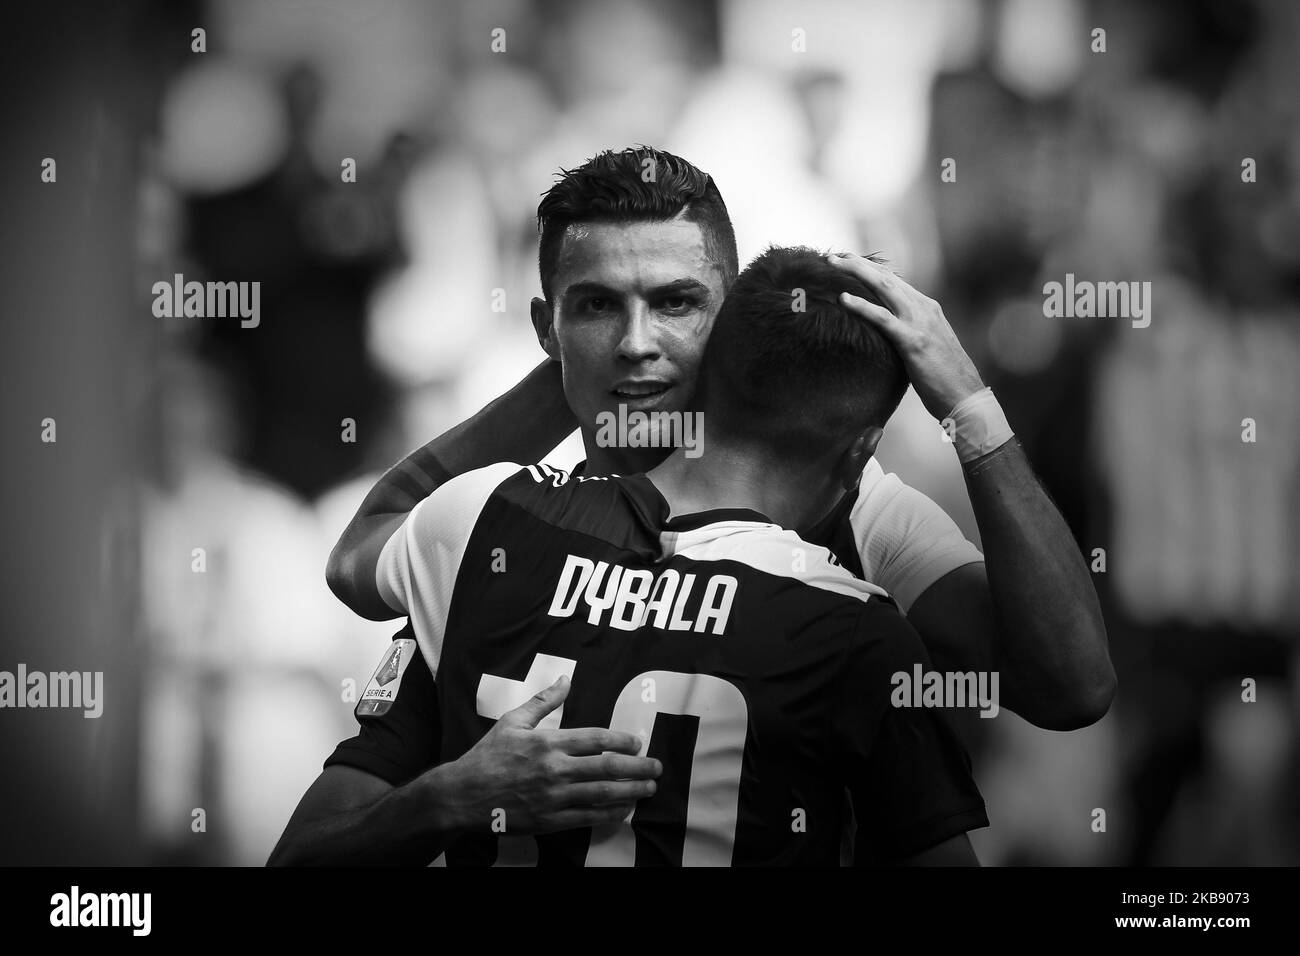 FIFA 18: Cristiano Ronaldo Has Awkward Goal Celebration